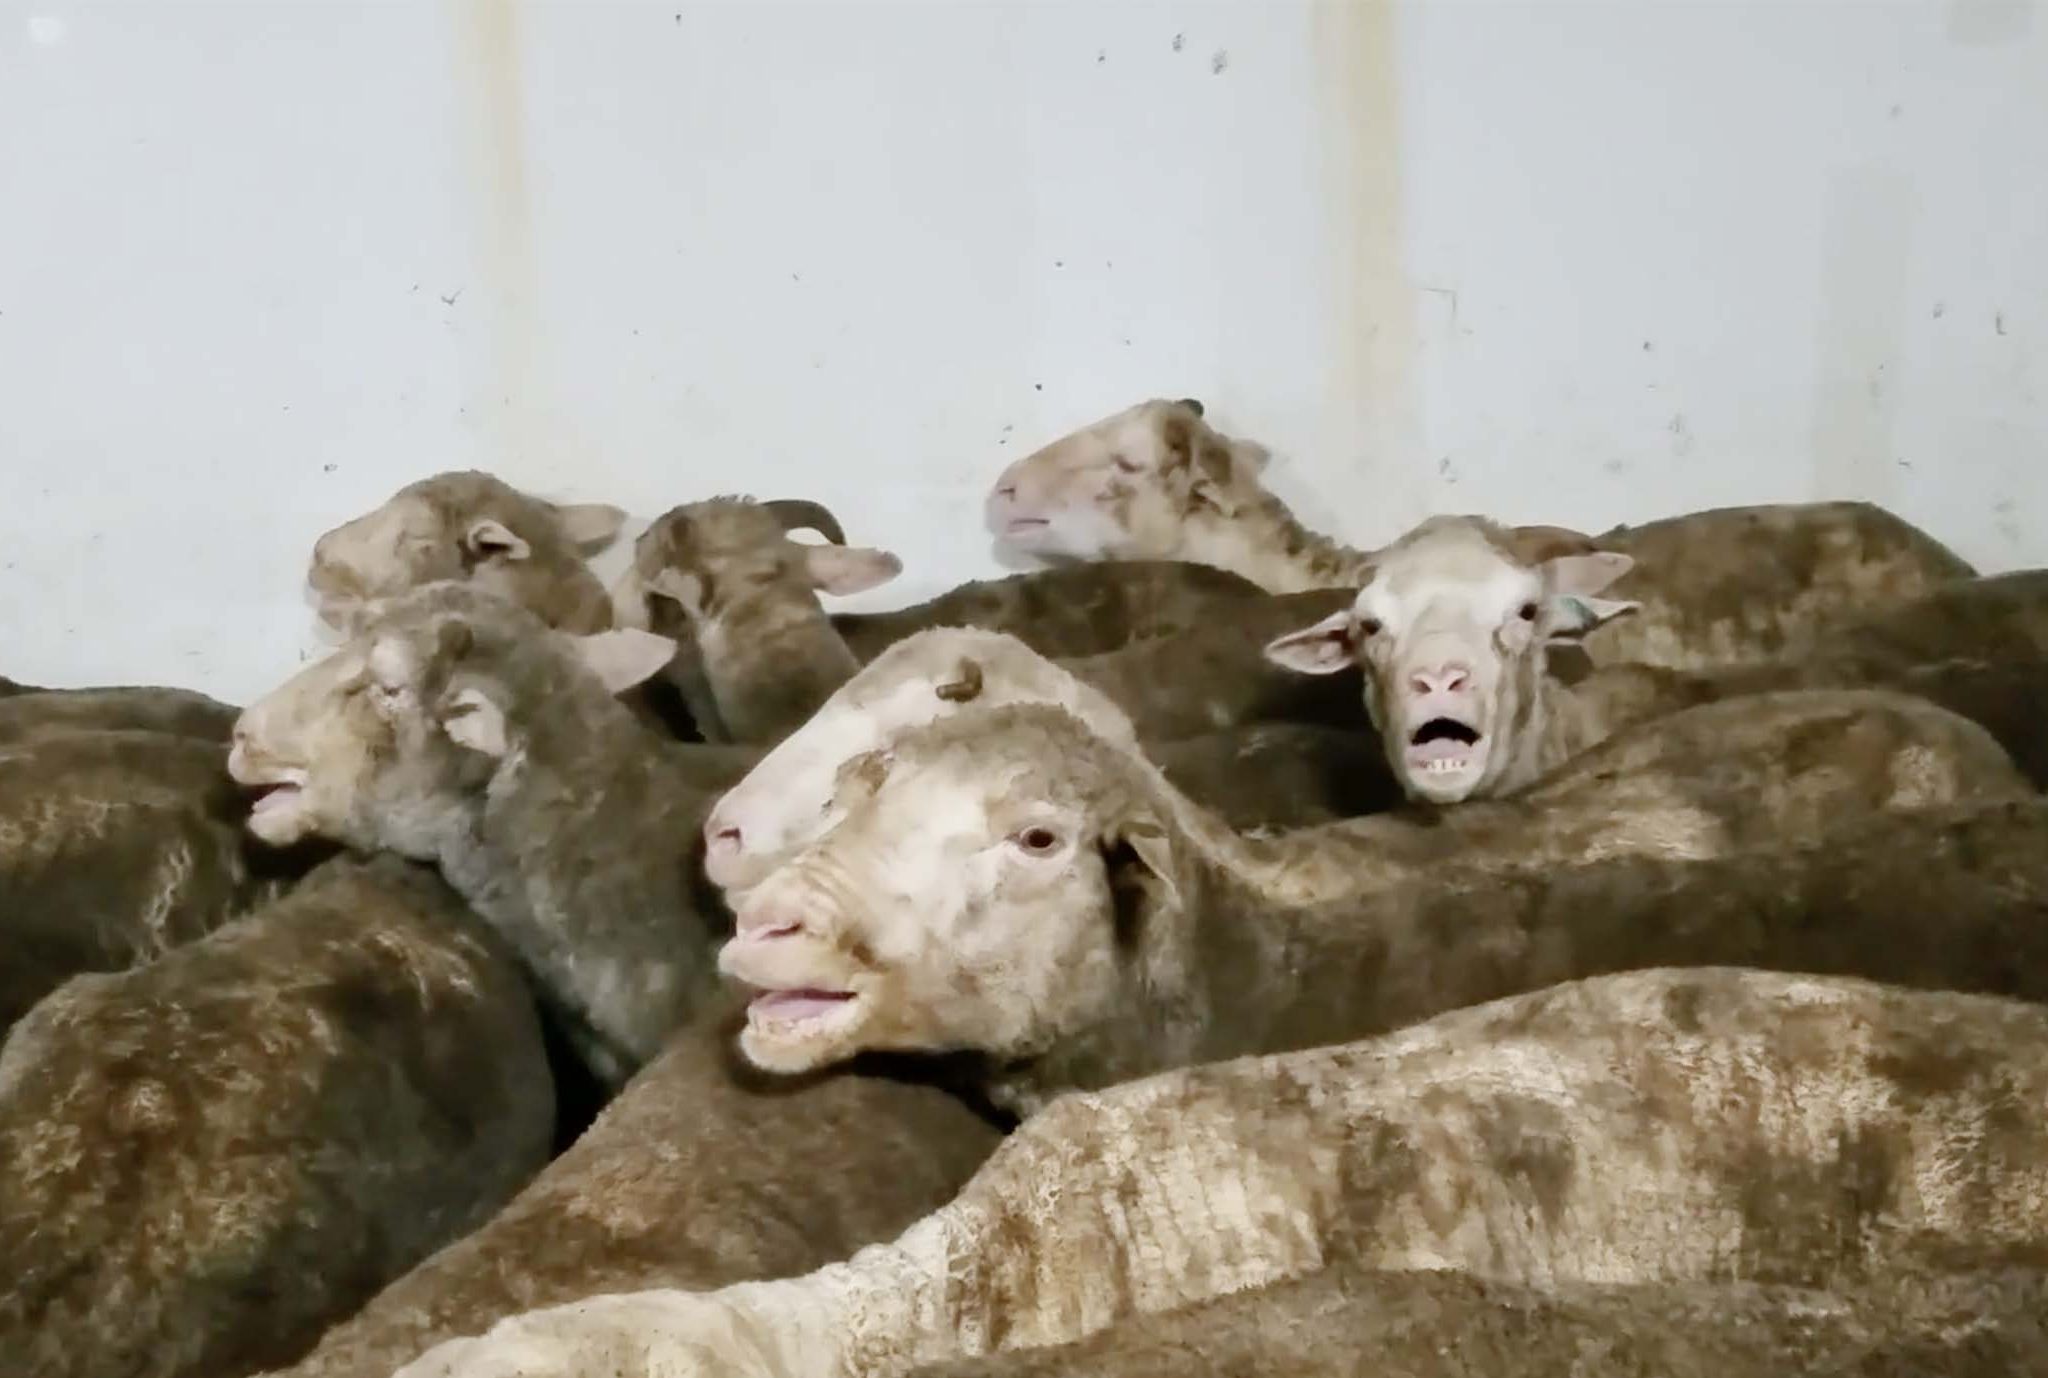 Het duurt nog enkele jaren voor het vervoer van levend vee in Europees verband mogelijk wordt verbonden. Nederland, Duitsland en Luxemburg zijn nu al voorstander van een dergelijk verbod. (Foto uit video Animal Rights)